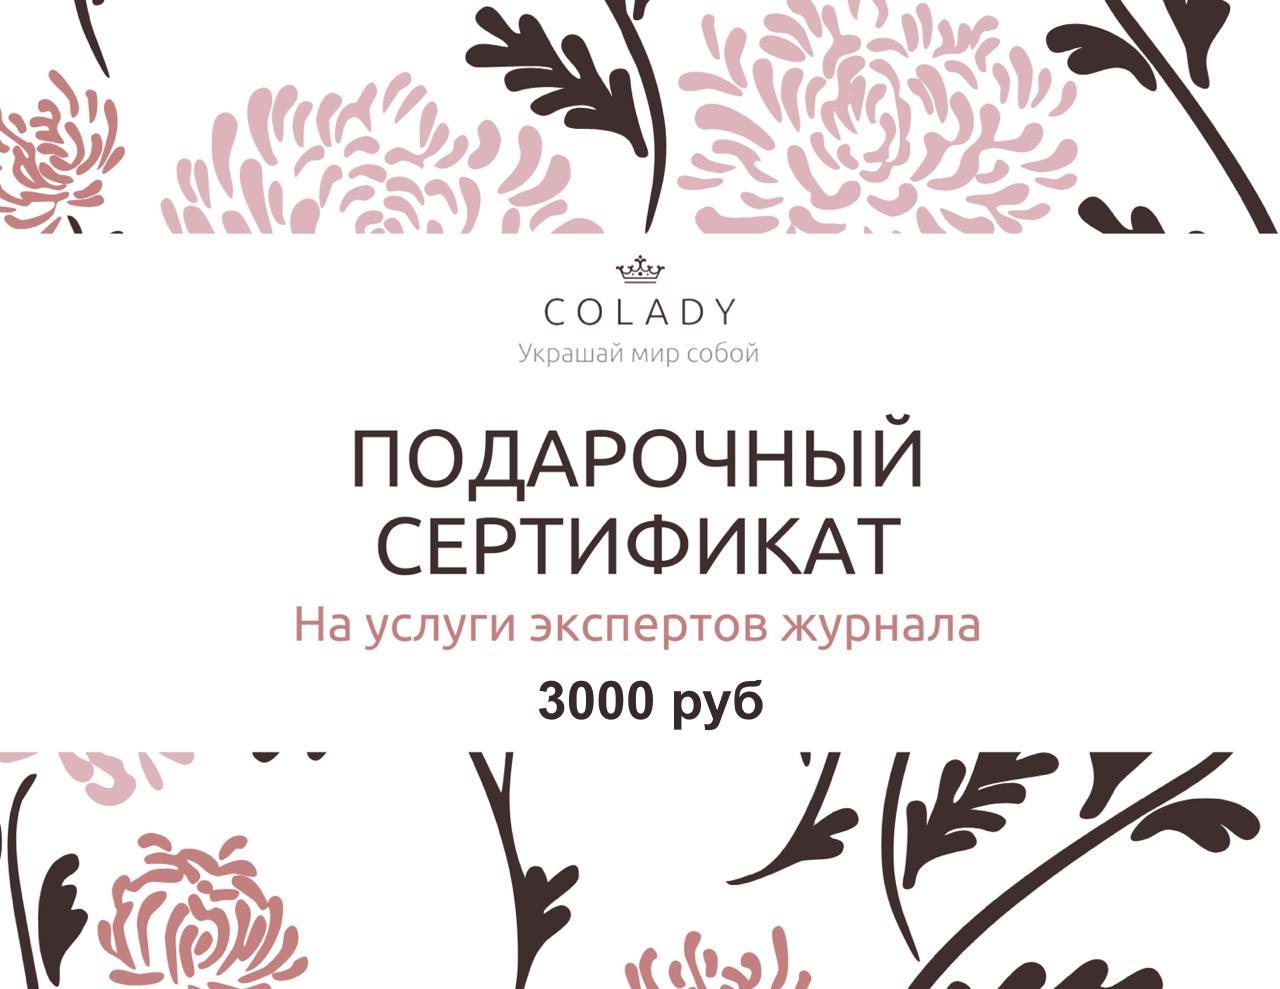 Подарочный сертификат Colady